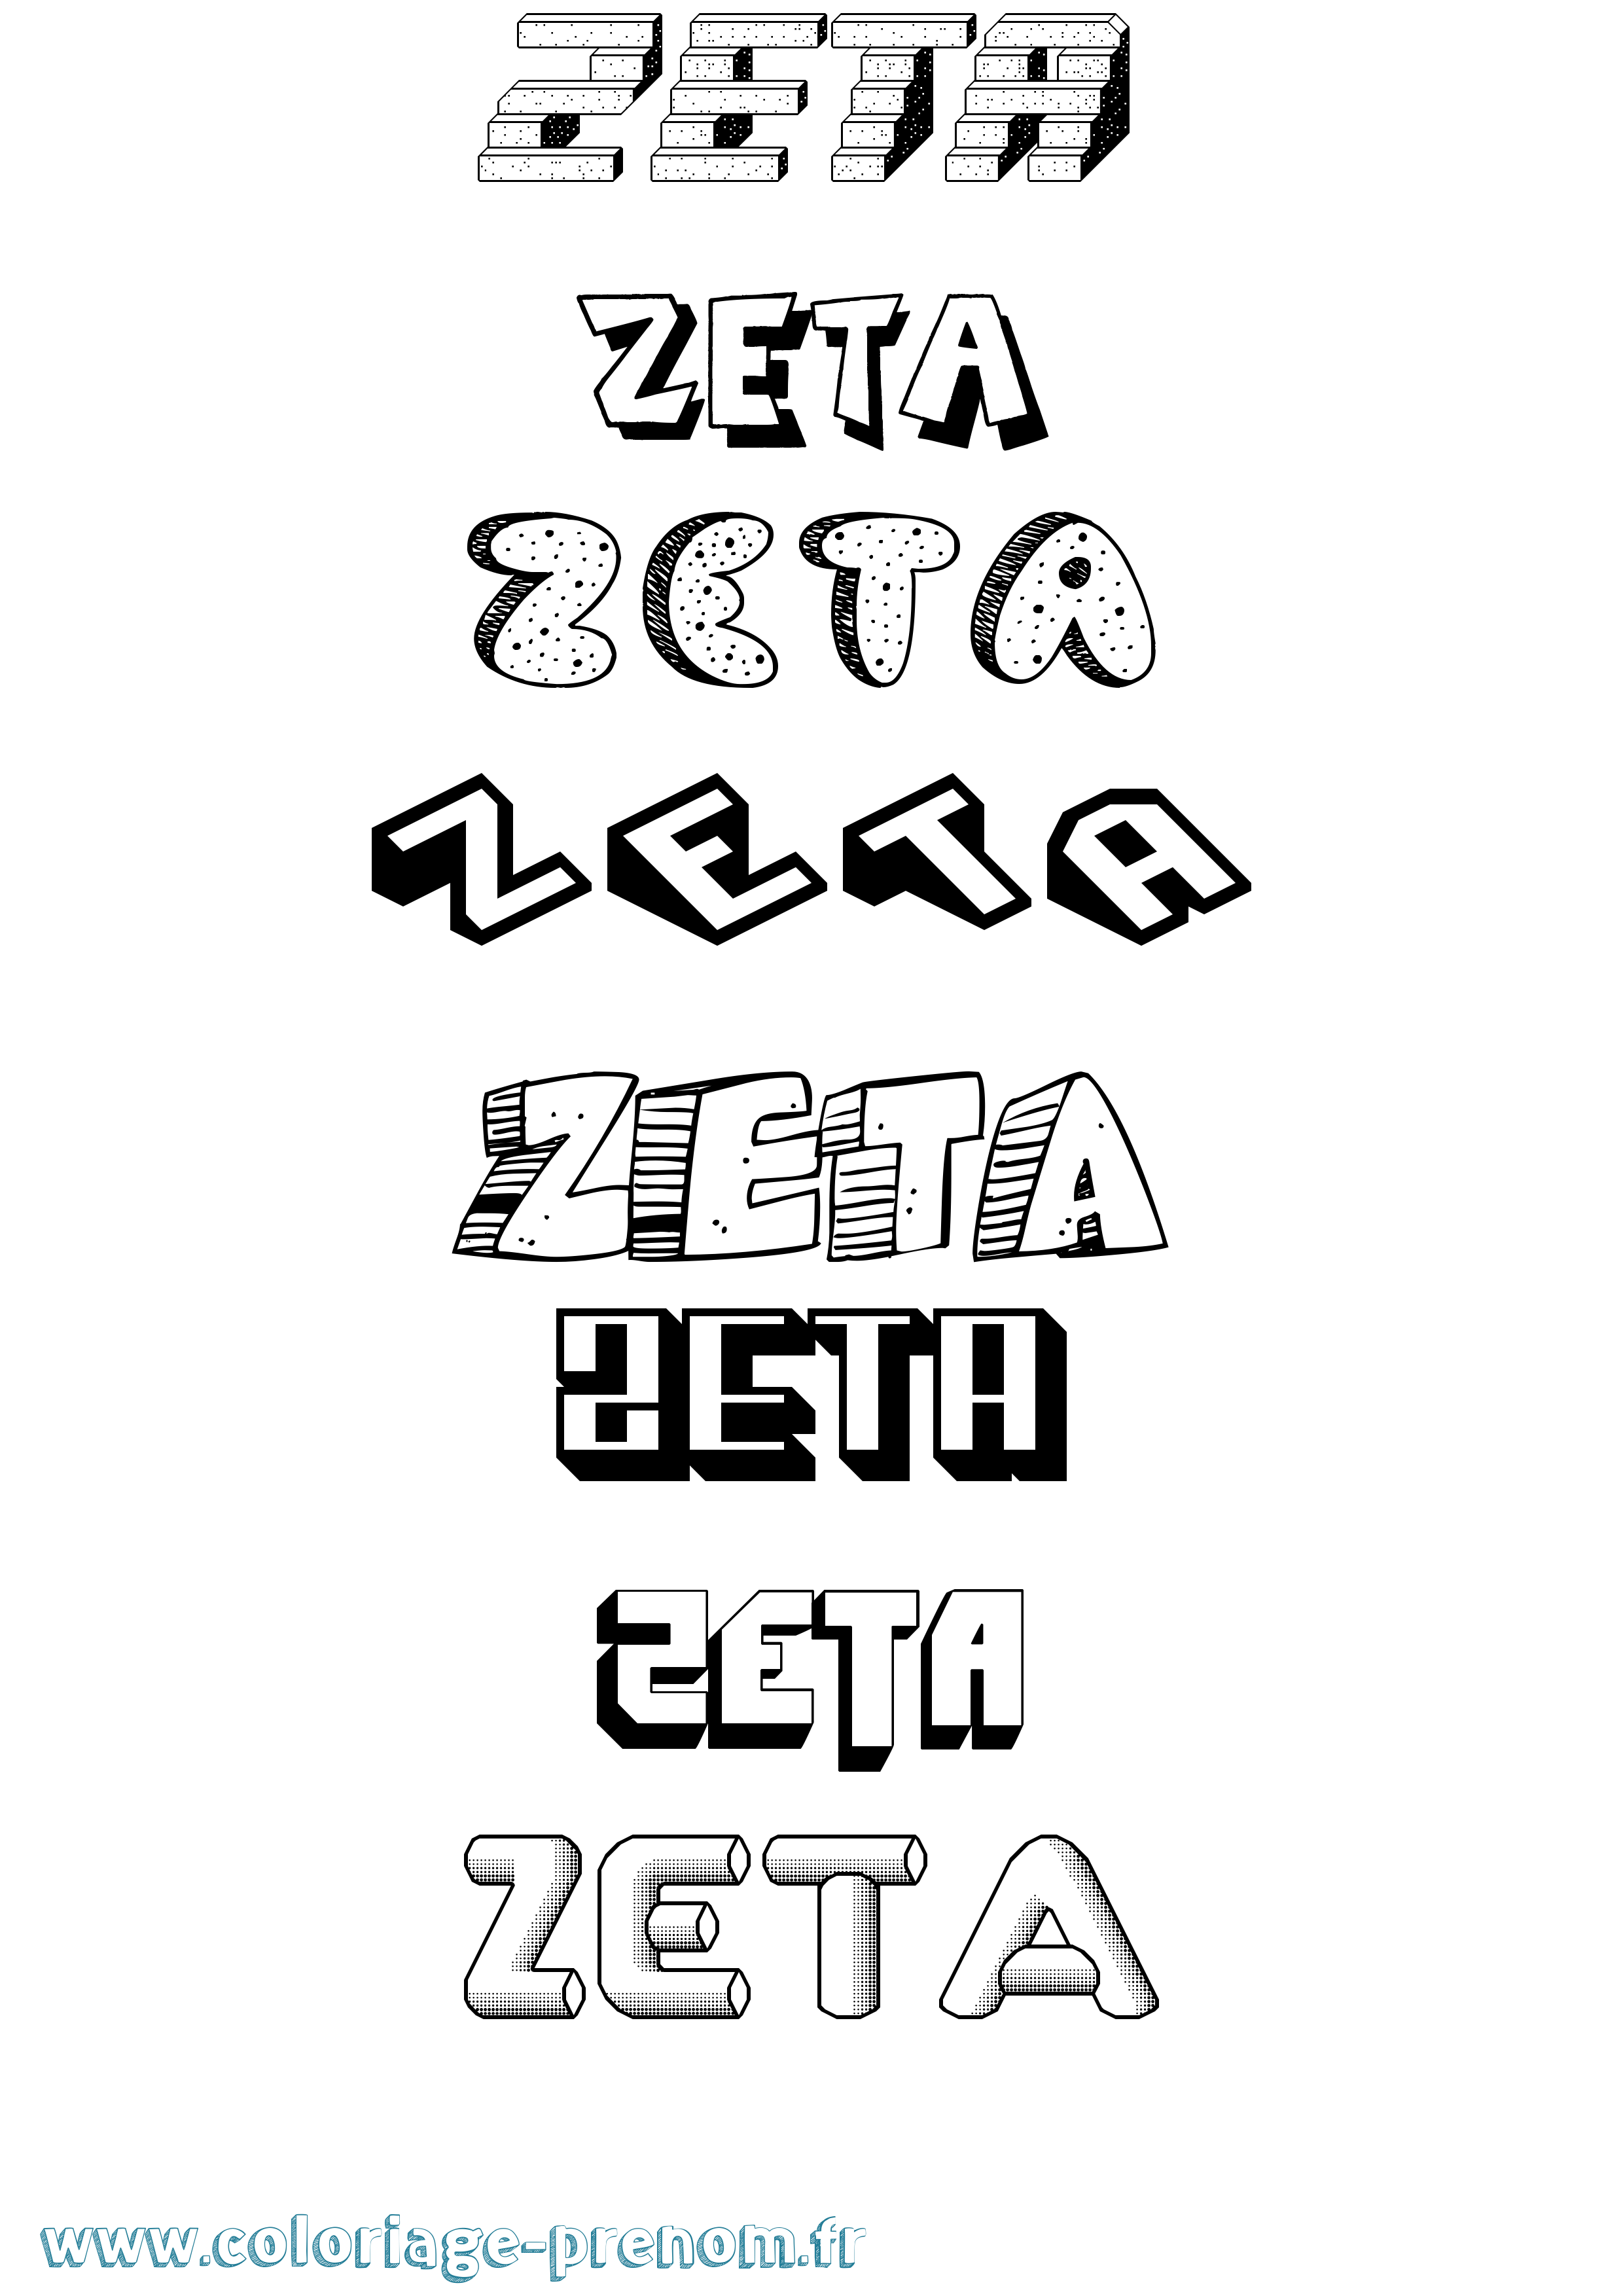 Coloriage du prénom Zeta : à Imprimer ou Télécharger facilement